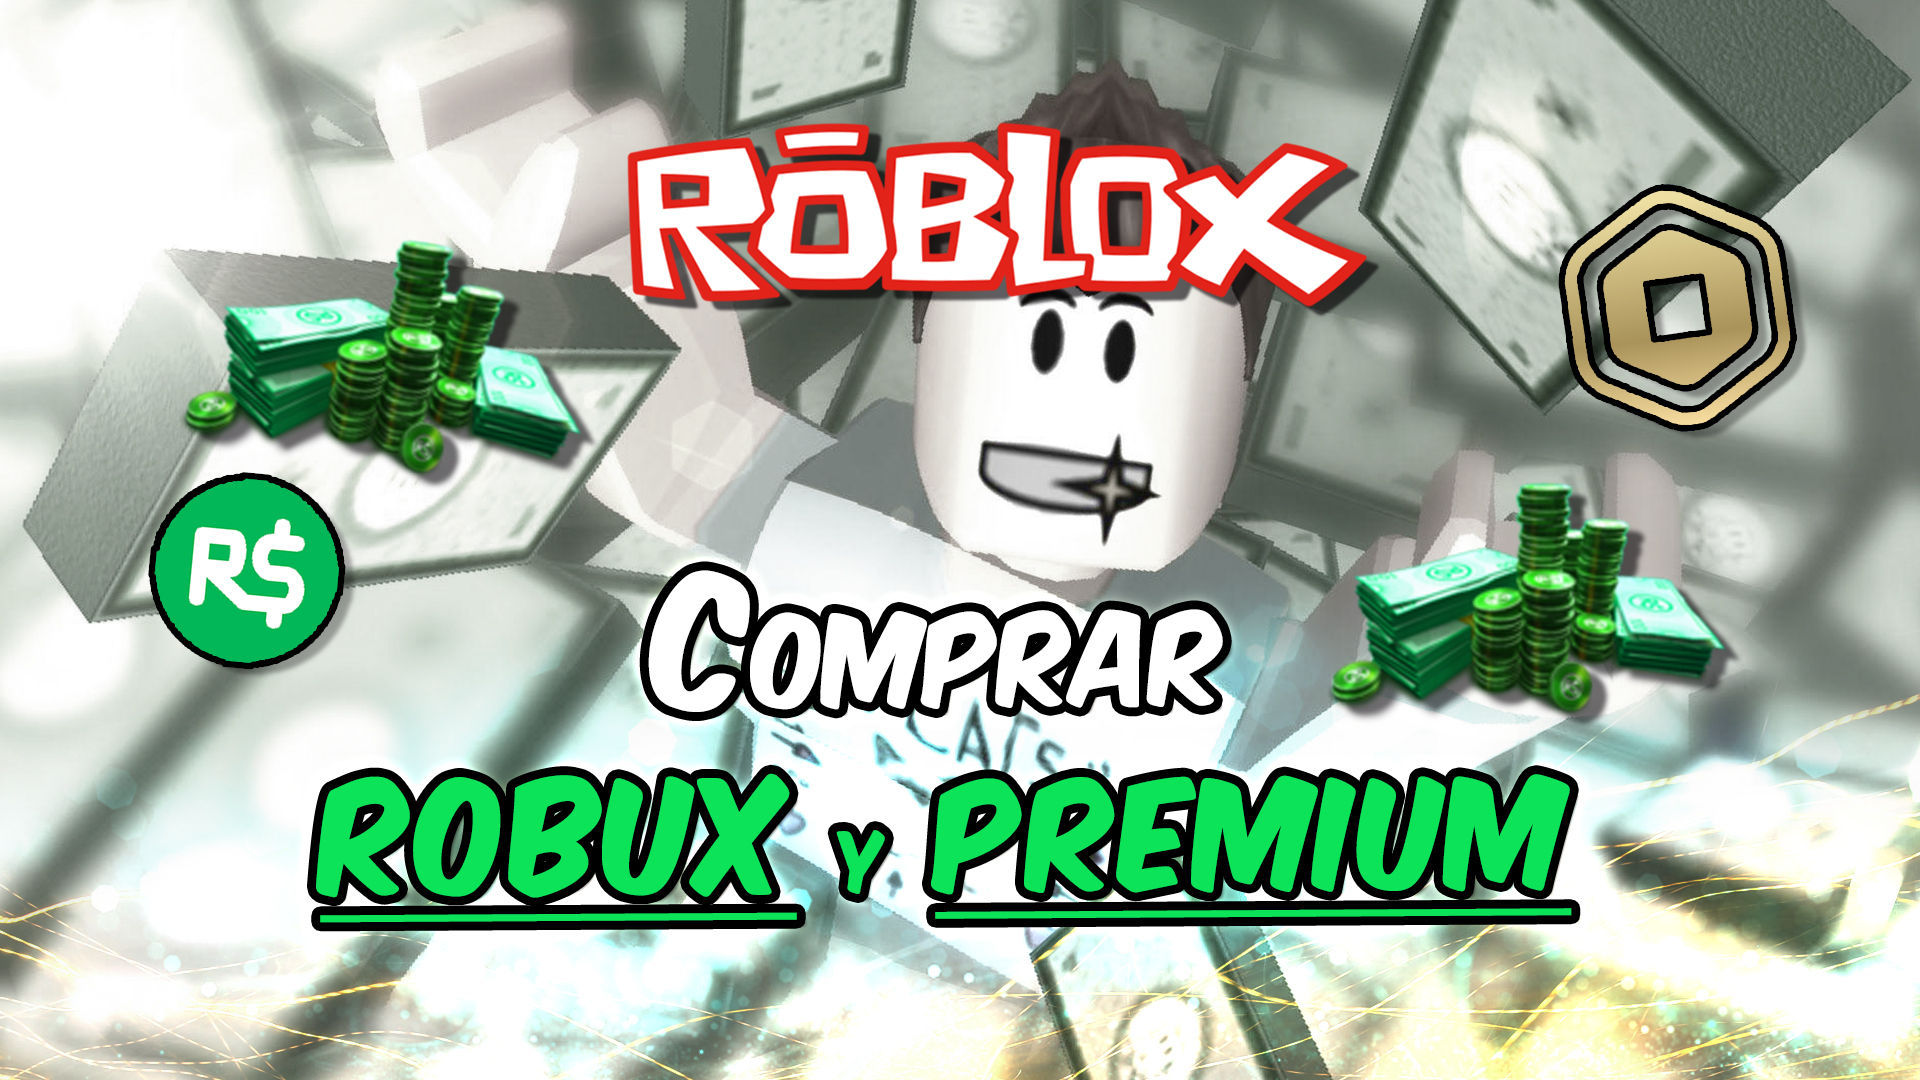 Roblox Comprar Robux Y Hacerse Premium Precios Ofertas Y Ventajas - que comprarse con 50 robux